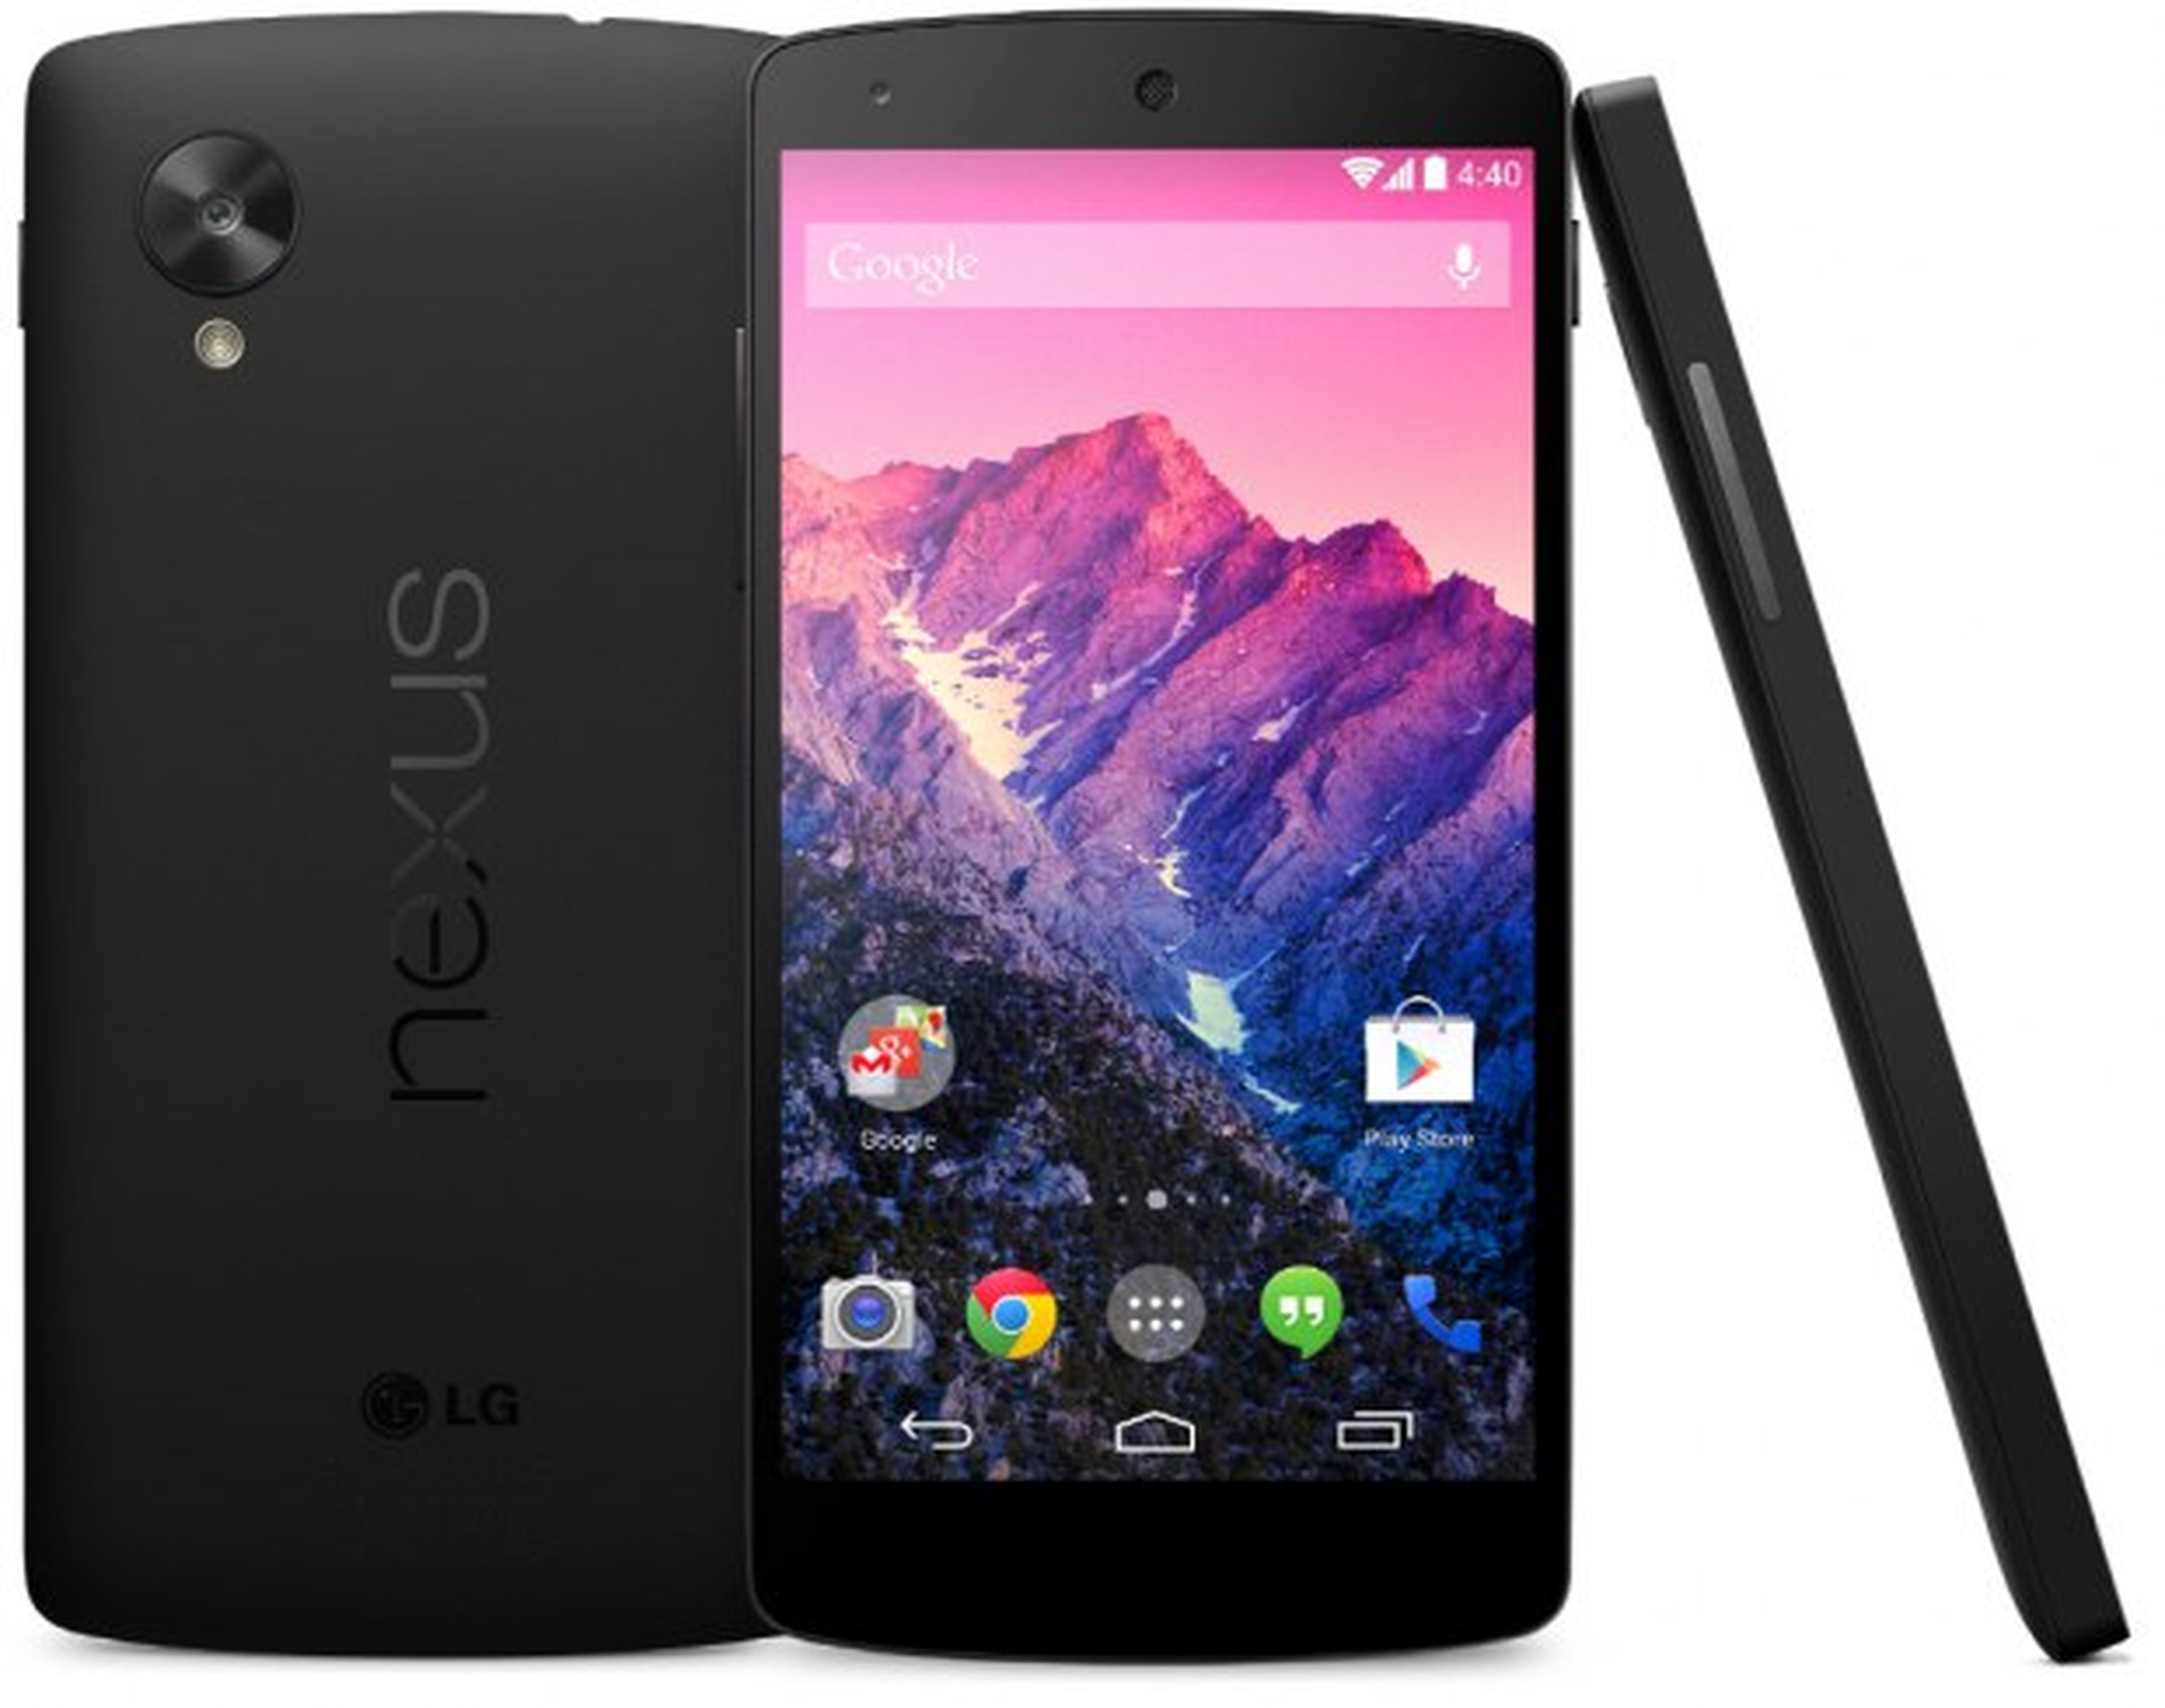 Nexus 5 Android